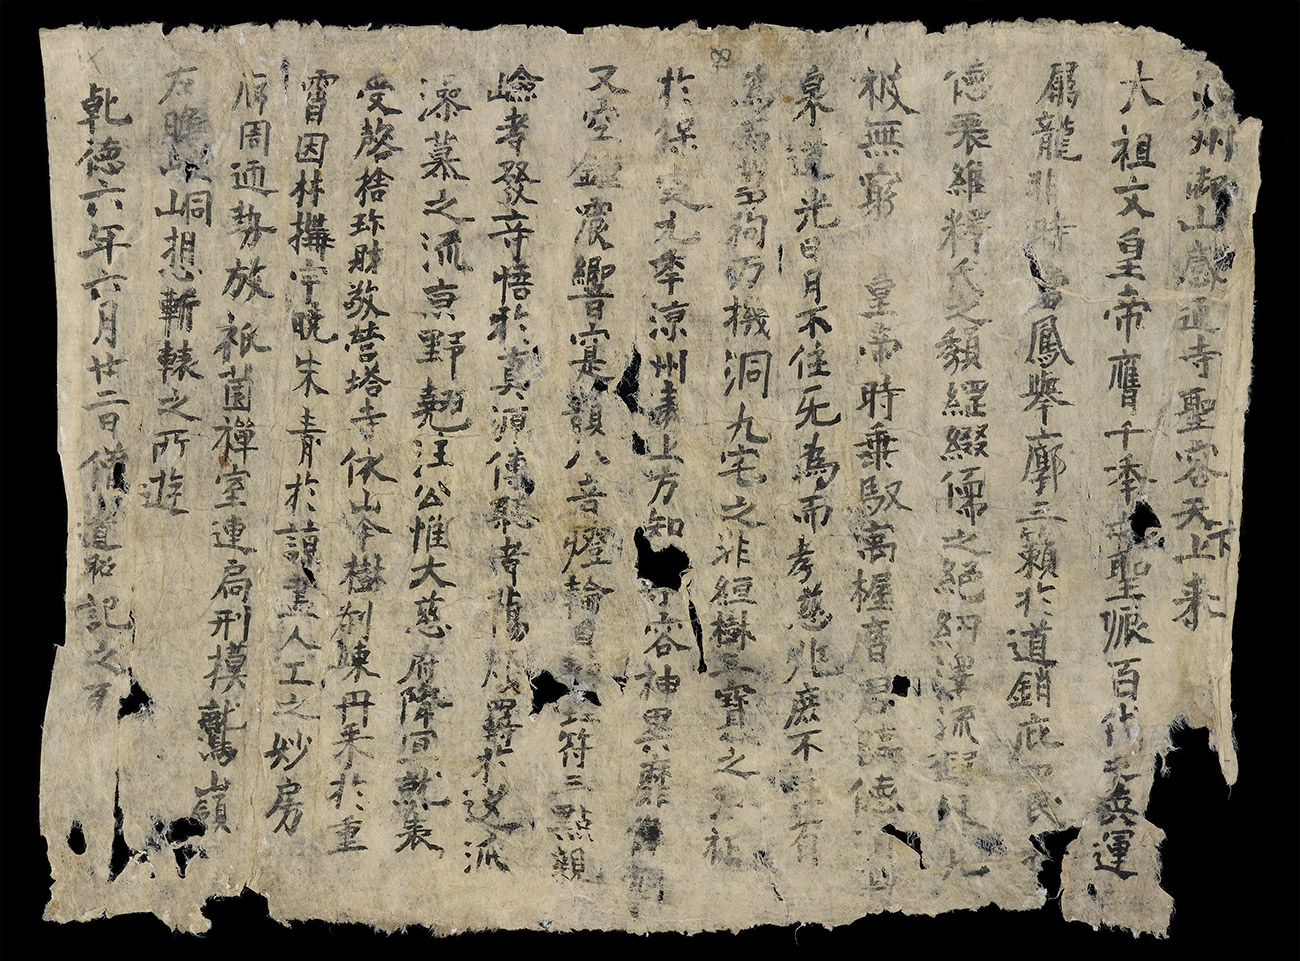 dunhuang manuscripts